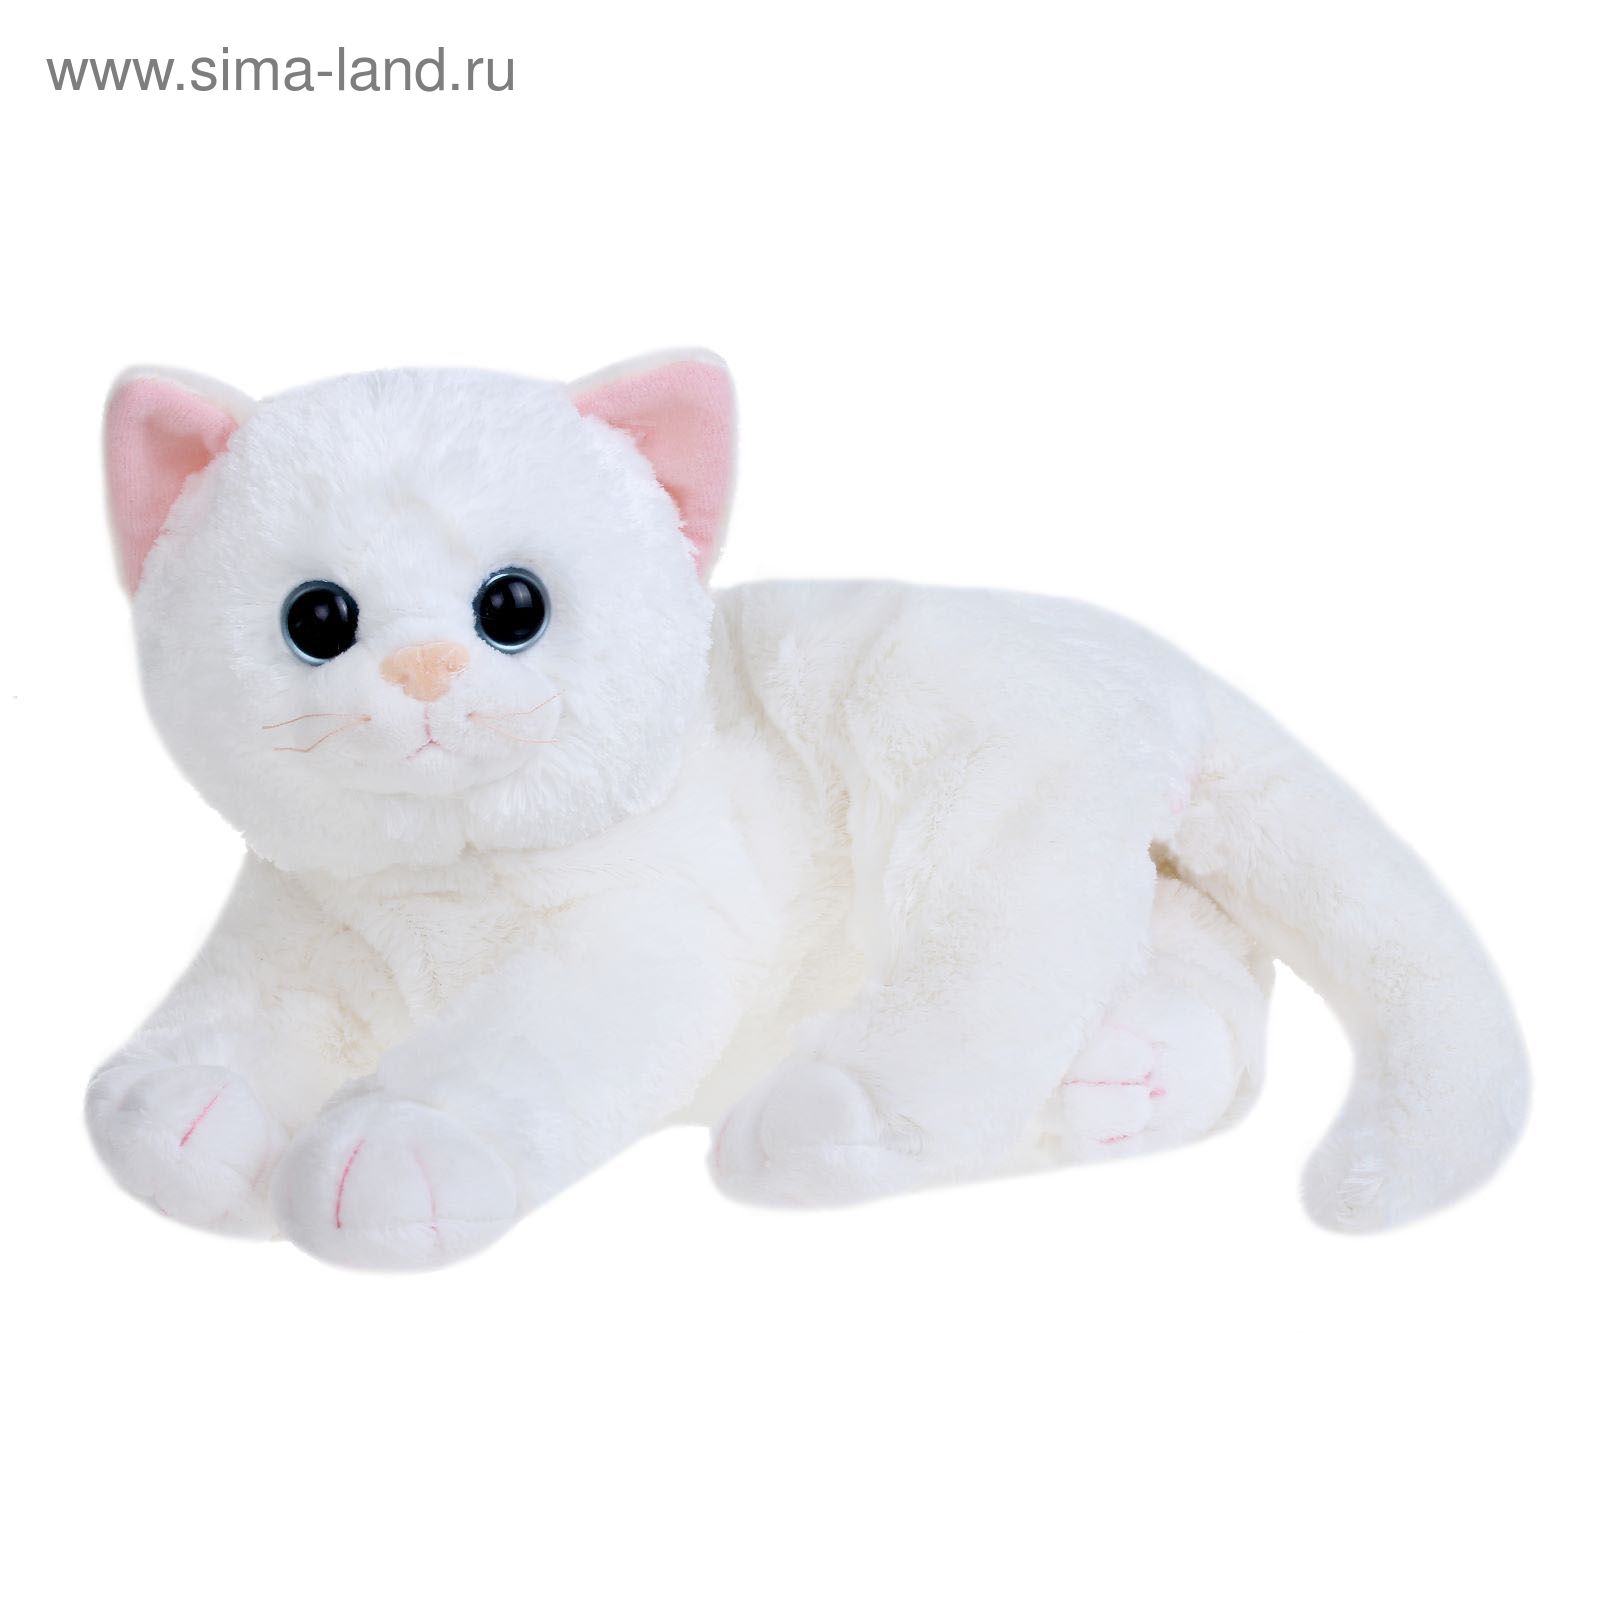 Купить кошку в калининграде. Мягкая игрушка кошка. Мягкая игрушка кошка белая. Белый котенок игрушка.